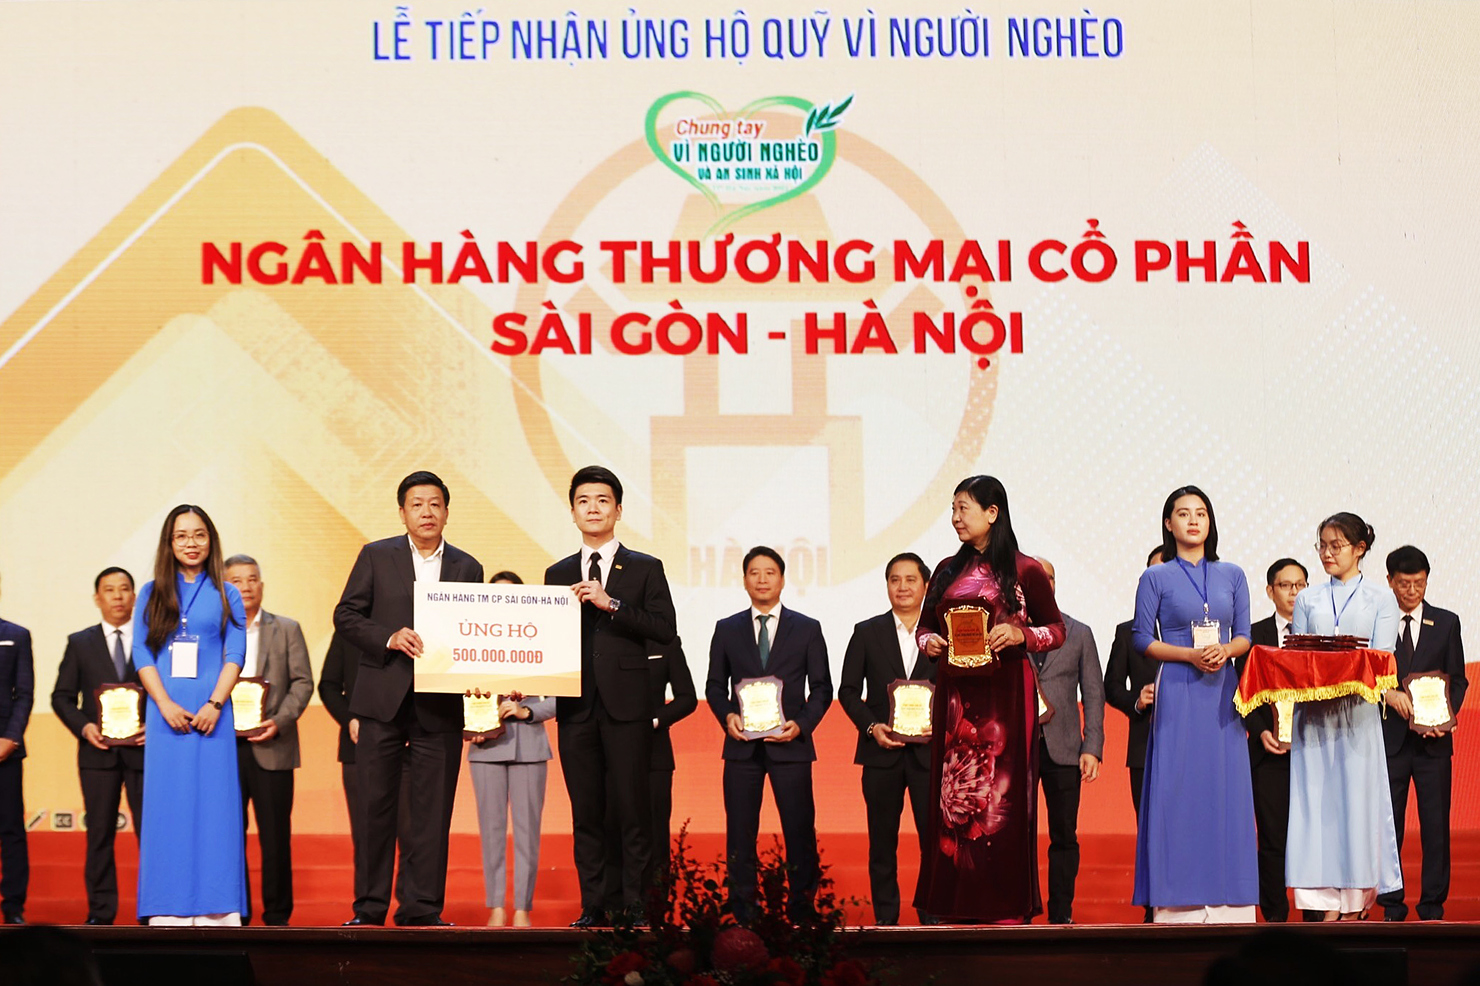 Thành viên HĐQT Đỗ Quang Vinh đại diện SHB ủng hộ 500 triệu đồng cho quỹ Vì người nghèo Tp Hà Nội